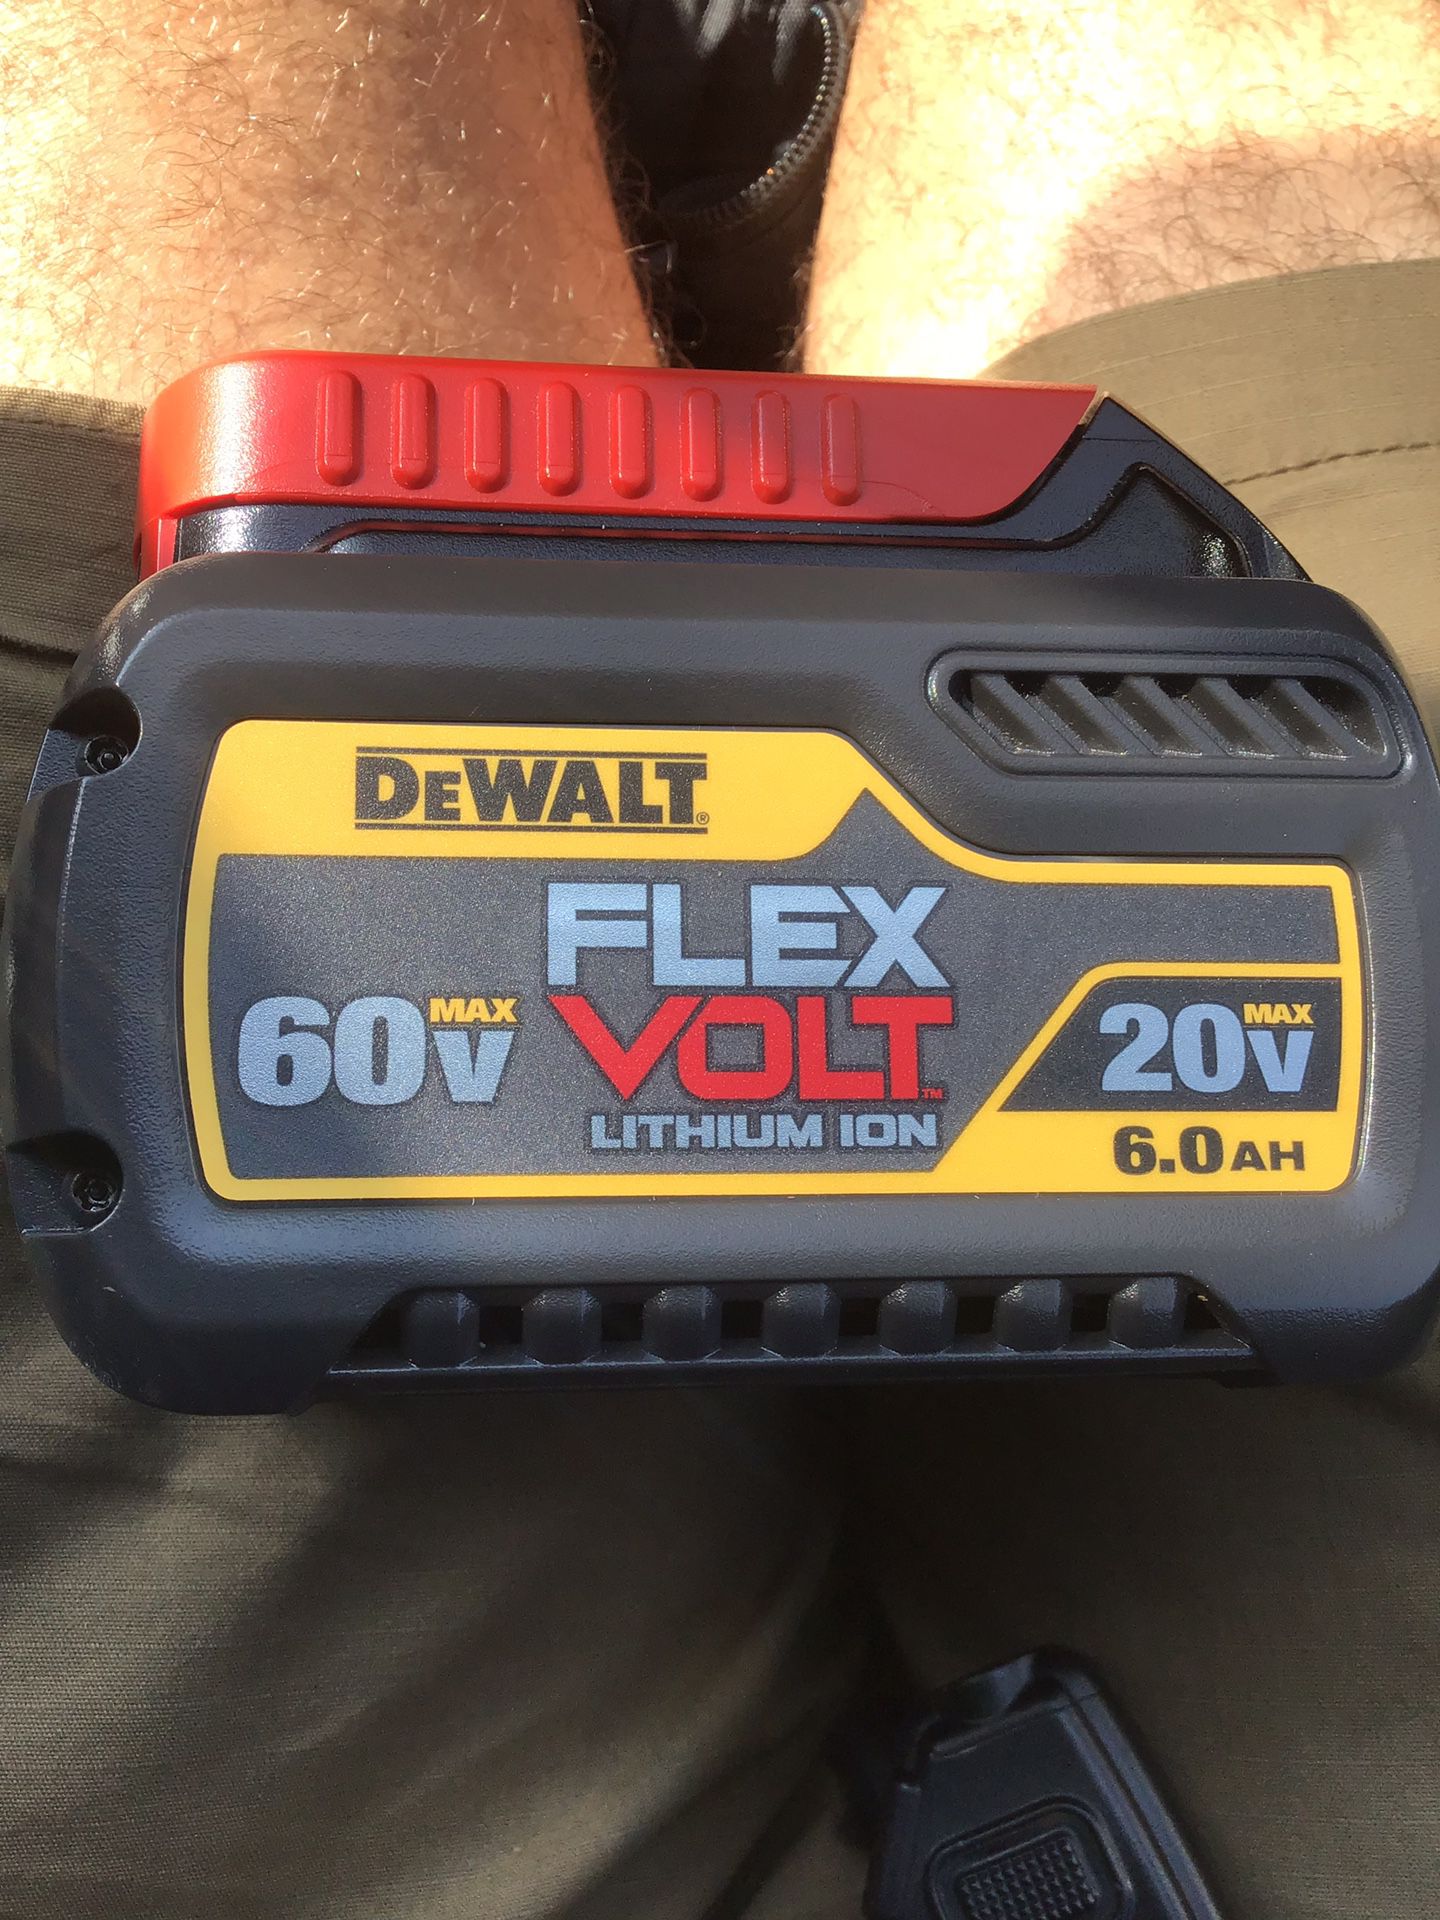 DEWALT flexvolt 6.0ah battery.